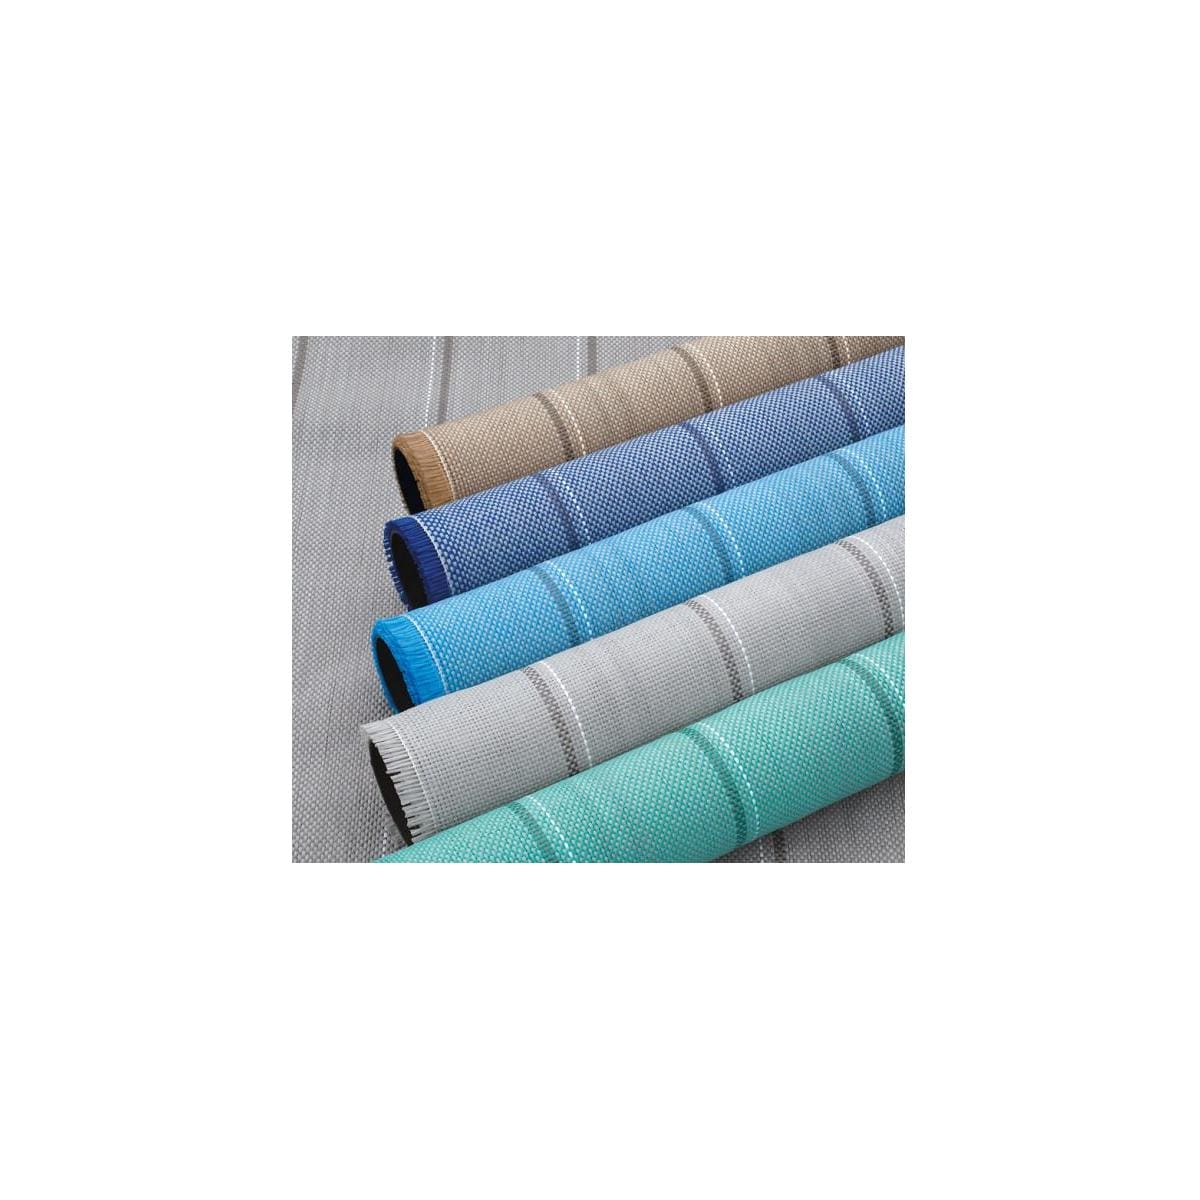 Zelt Teppich Arisol Standard 300x600 Farbe Grau oder Blau für Camping Outdoor 